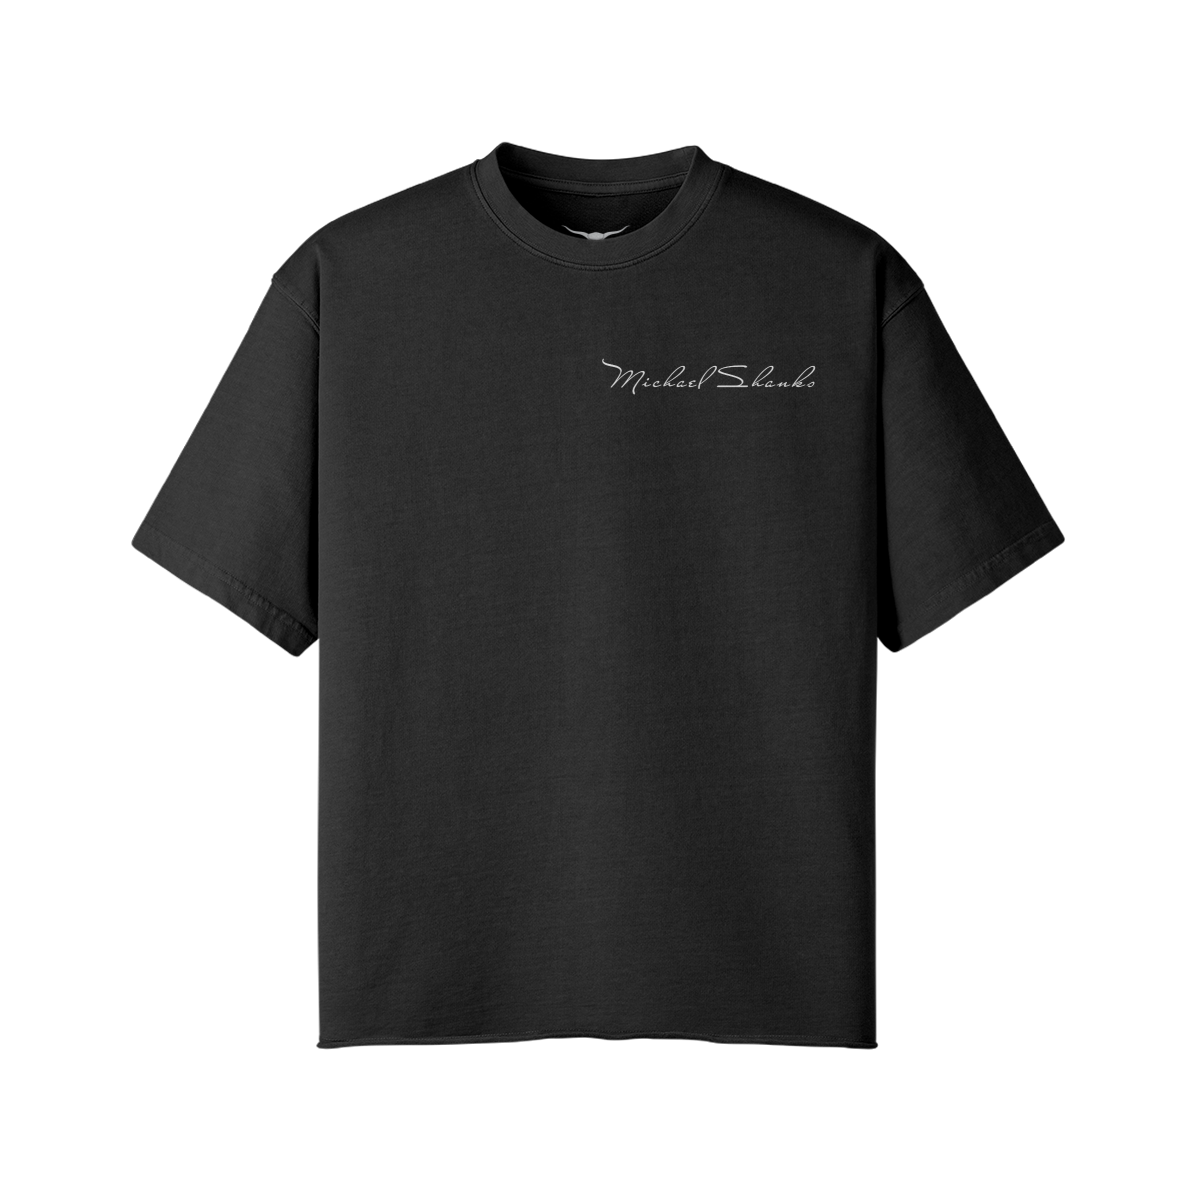 Michael Shanks Oversized T-Shirt